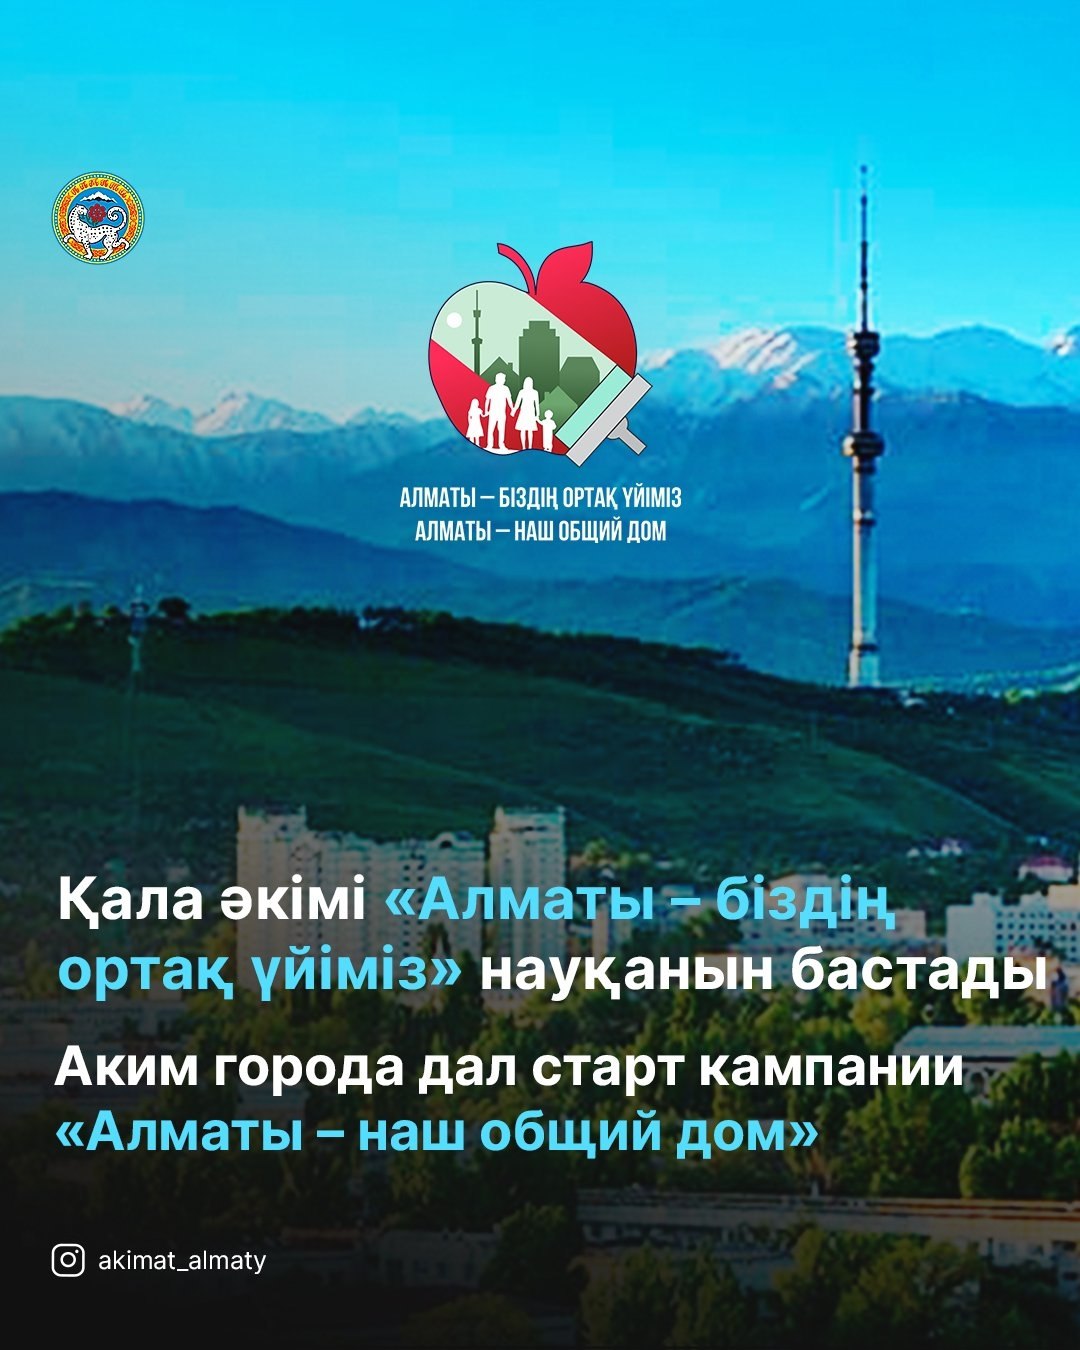 Аким города дал старт кампании «Алматы – наш общий дом»